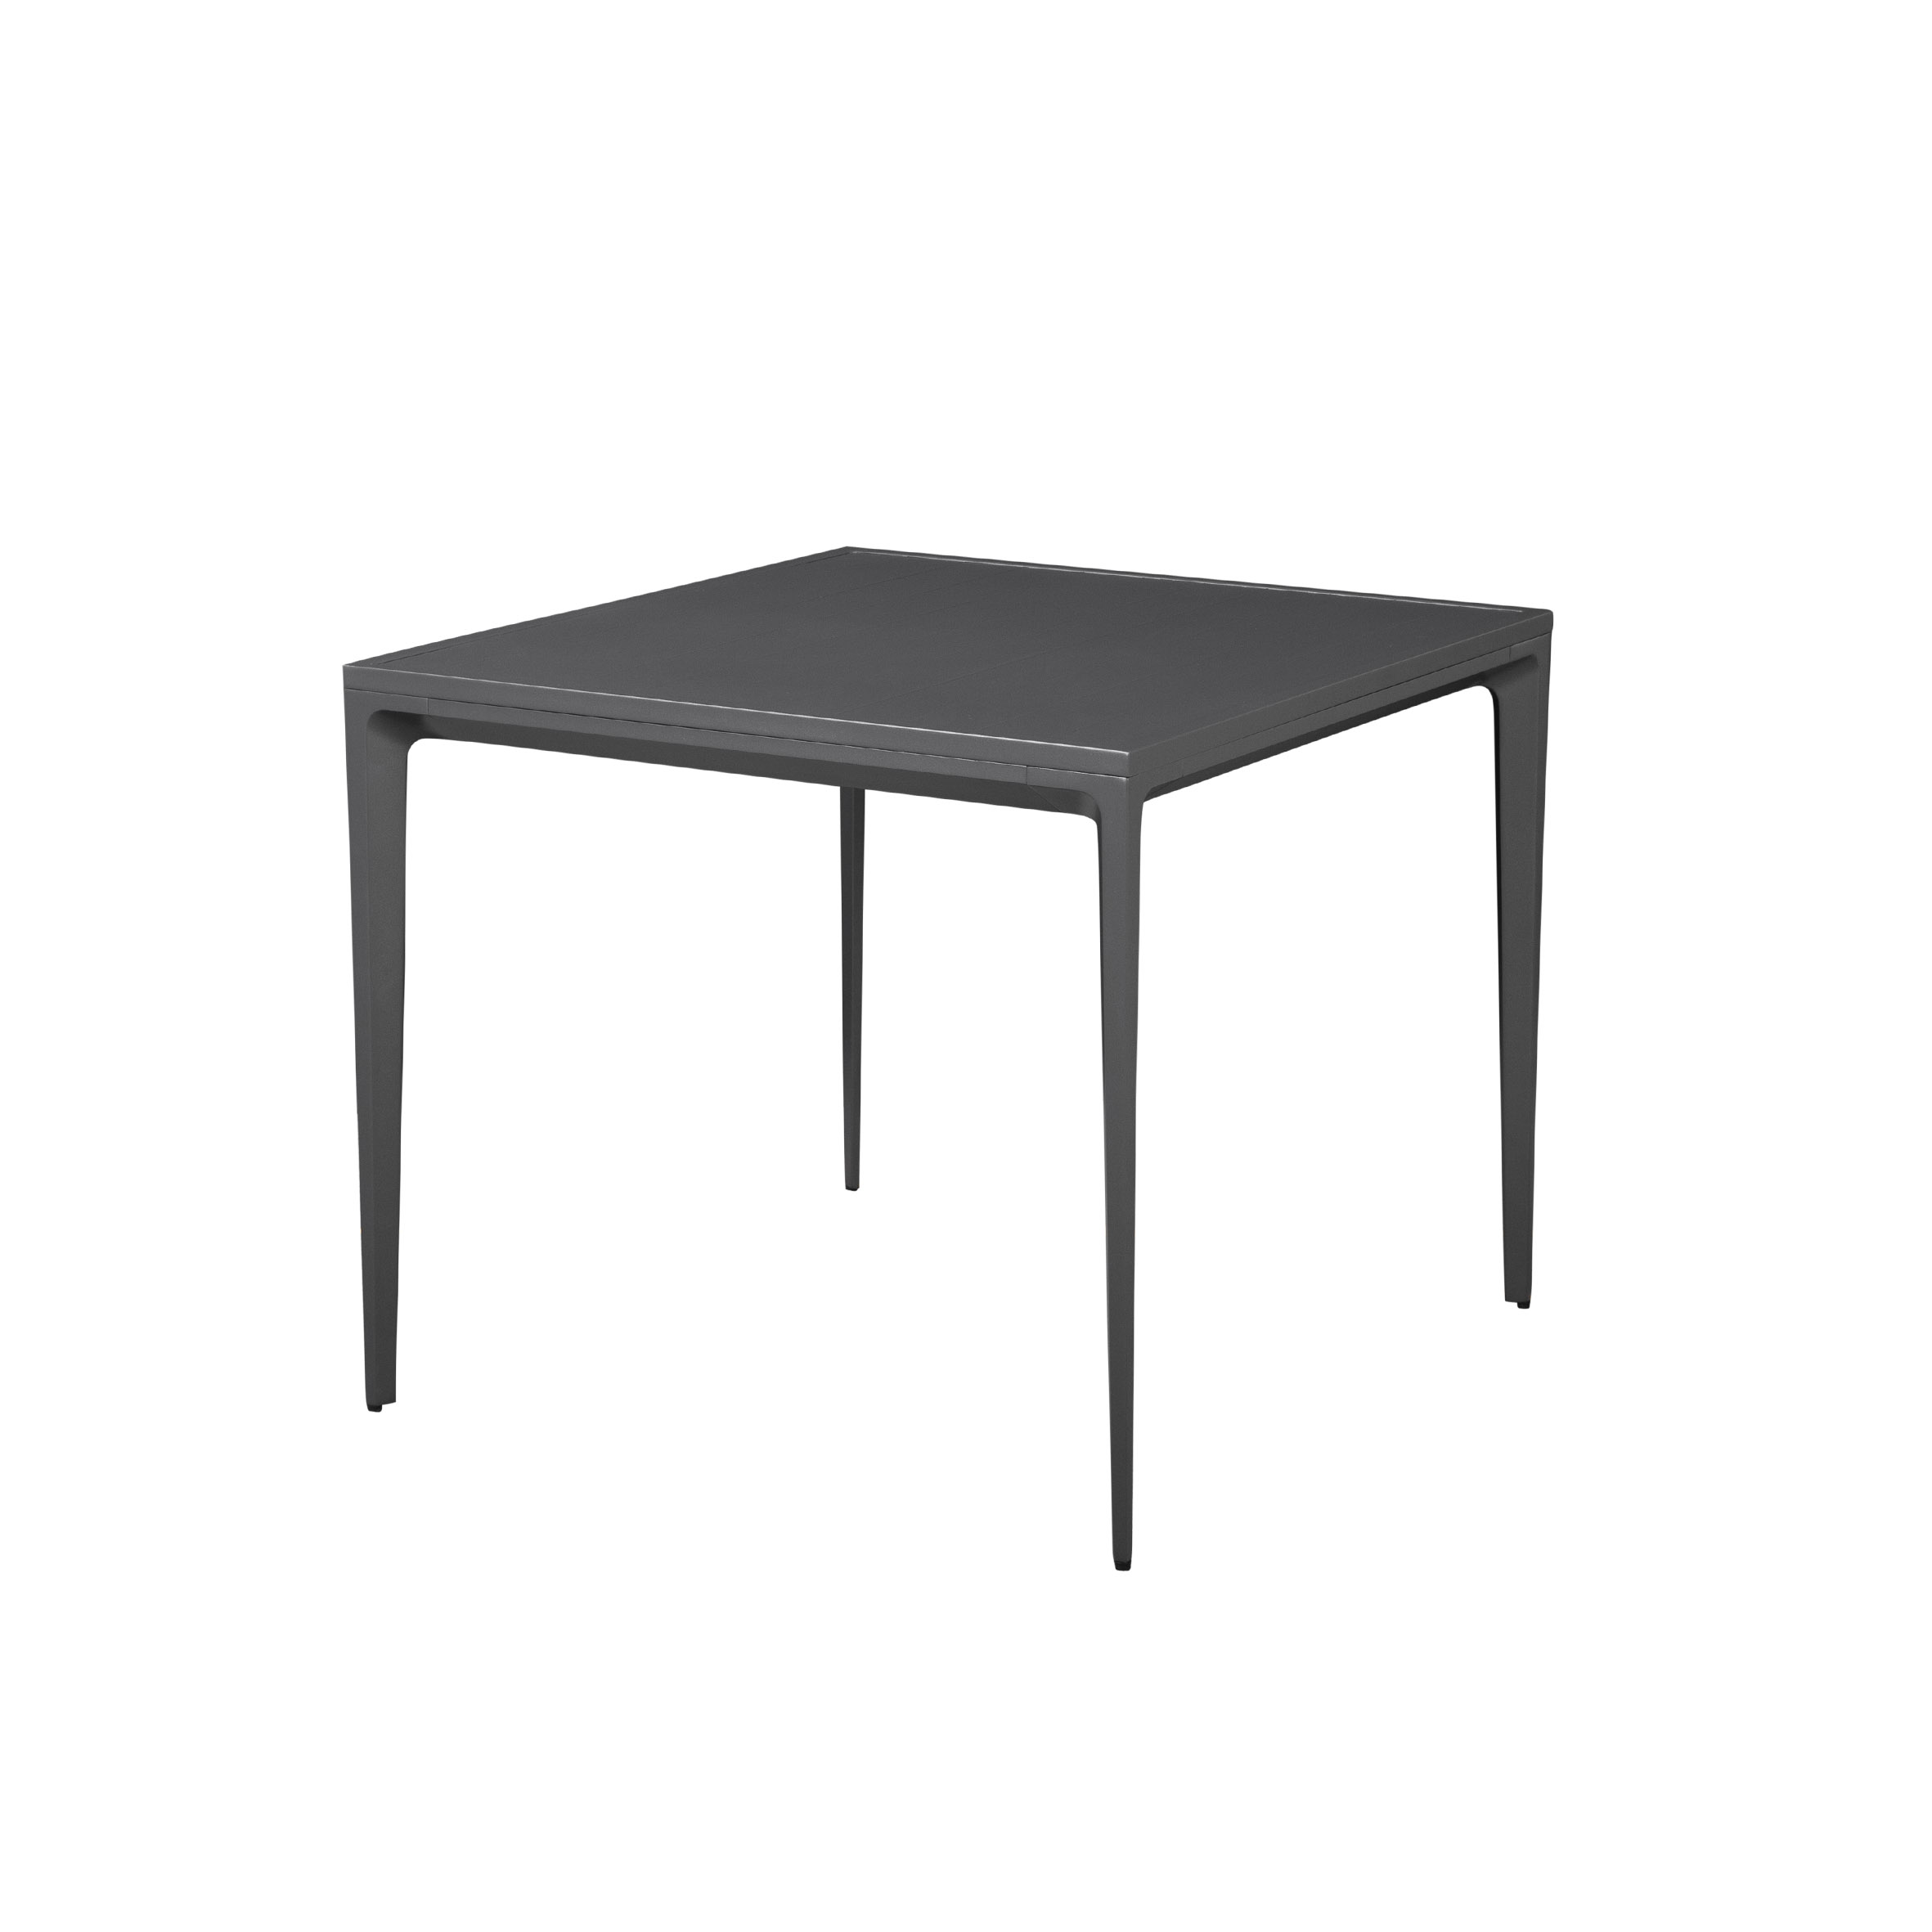 Жасмин алу.квадратный стол (с алюминиевой планкой) Избранное изображение